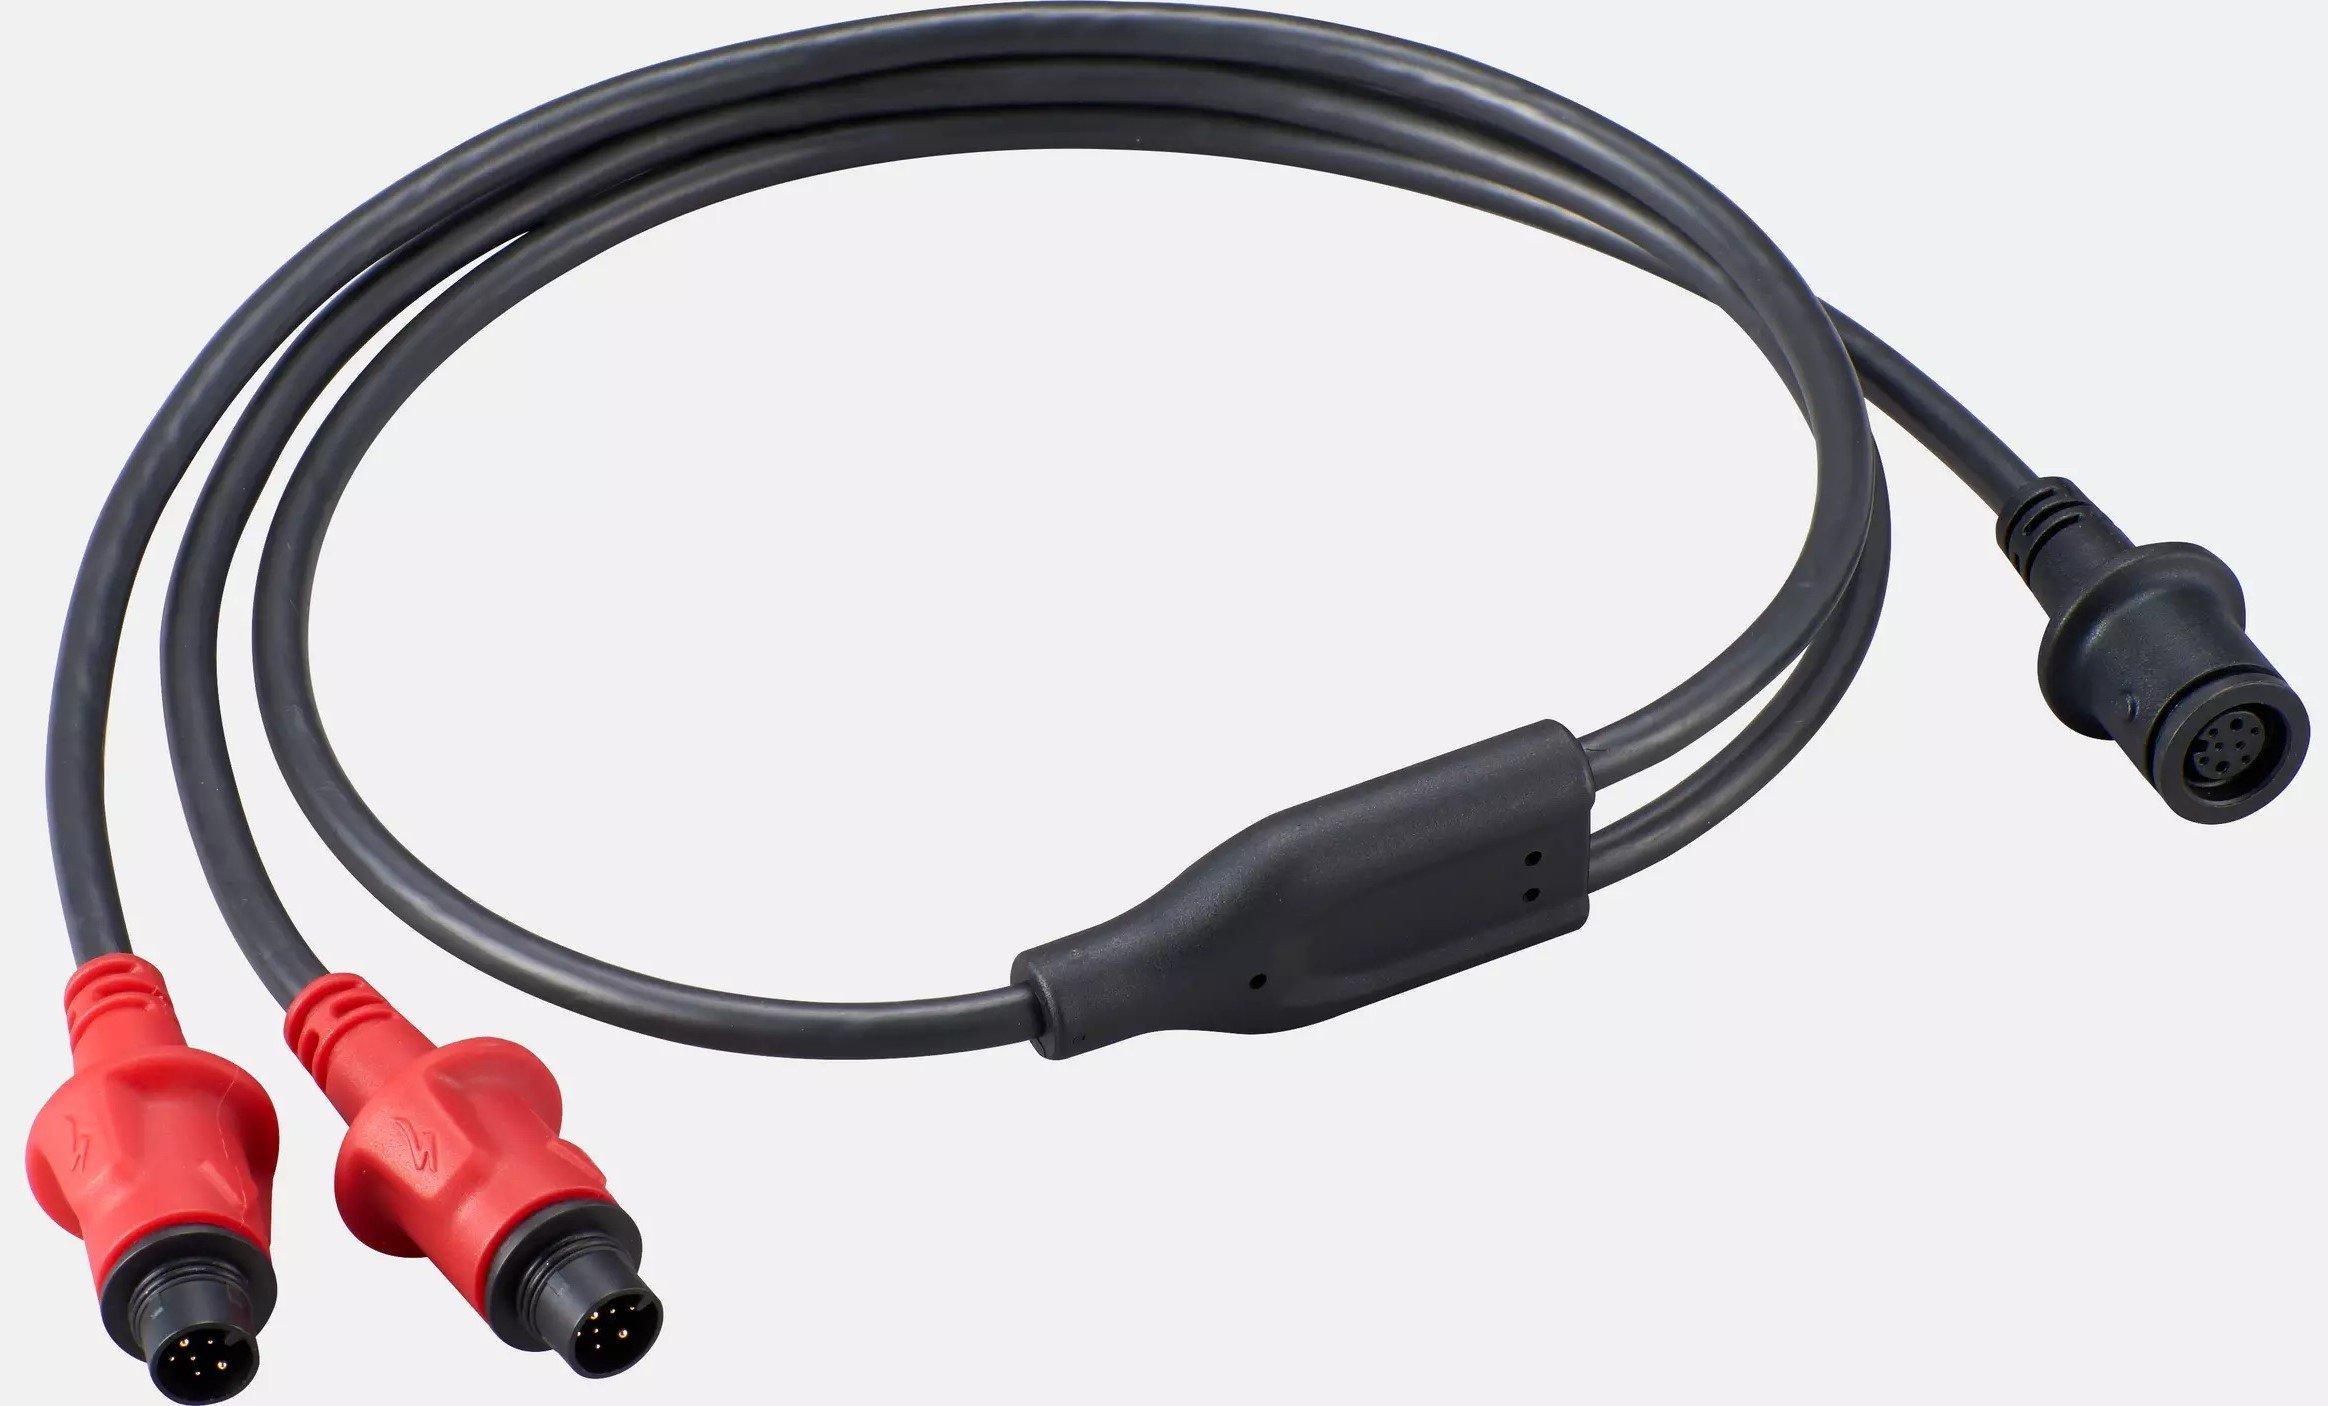 Cyklokomponenty Specialized Turbo SL Y Charger Cable Veľkosť: Univerzálna veľkosť